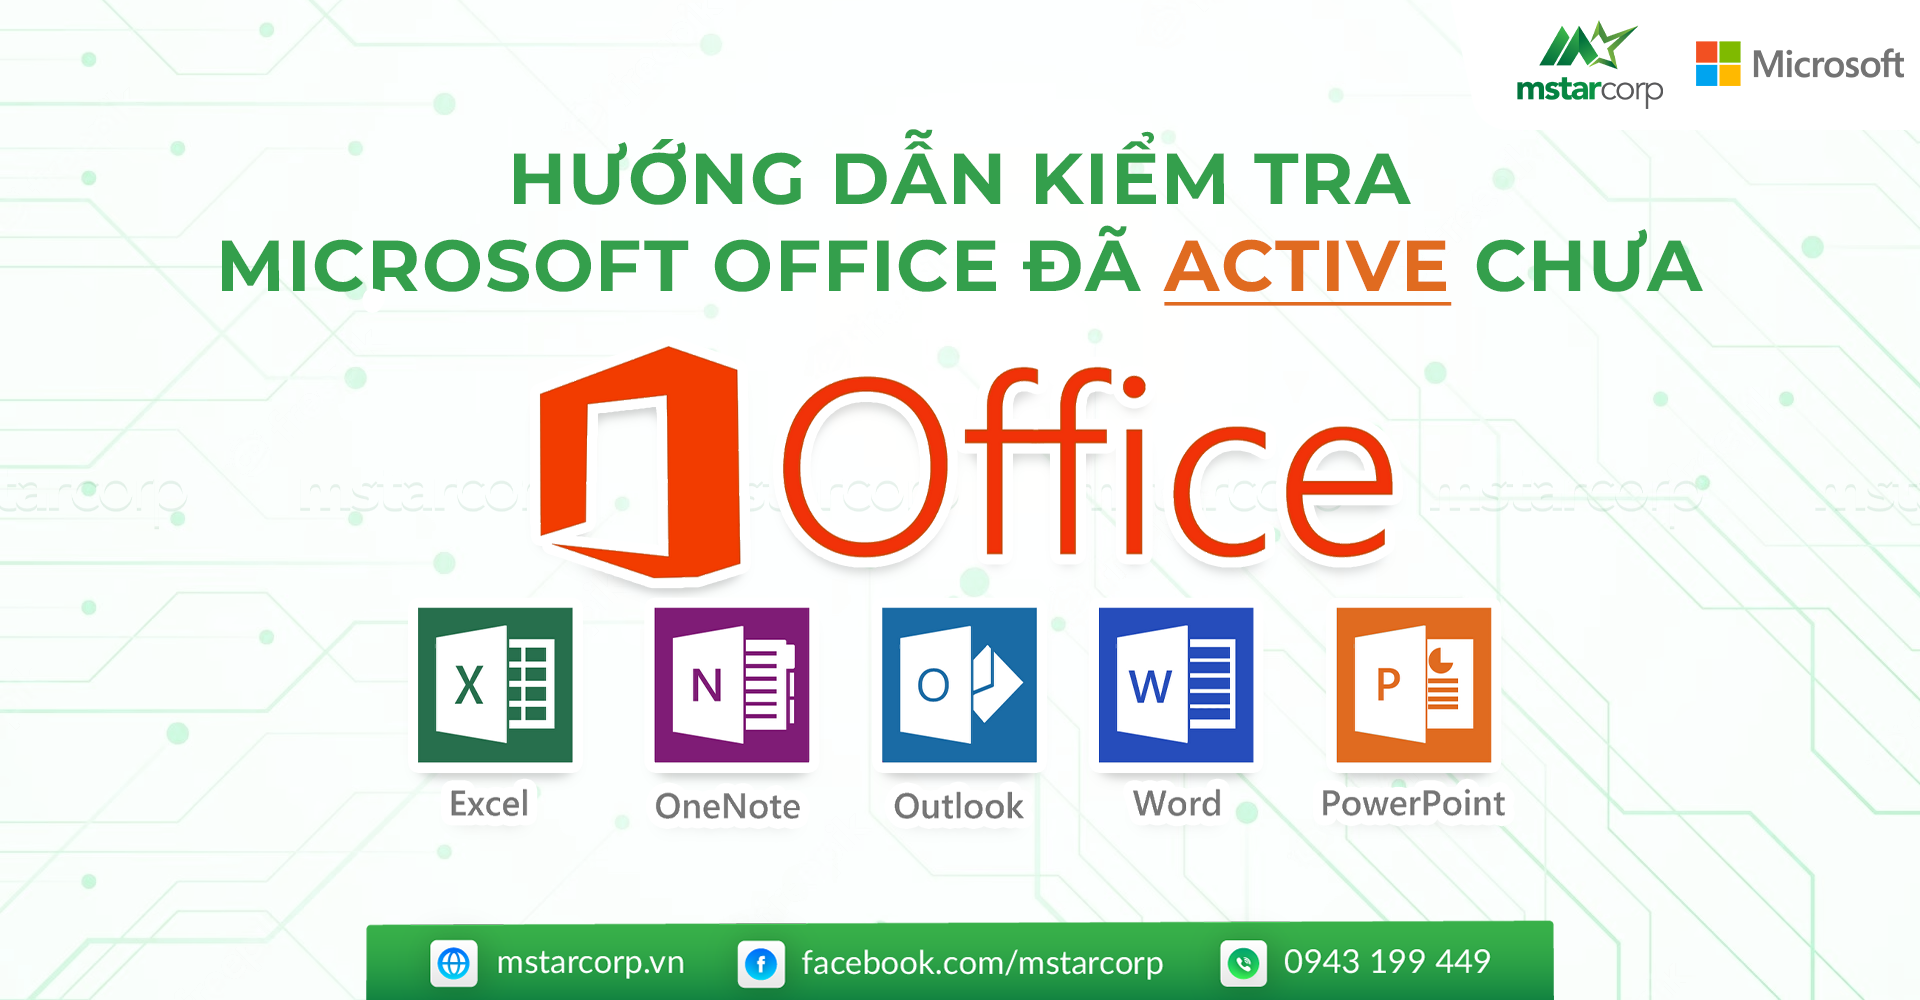 Huong dan kiem tra Microsoft Office da Active chua